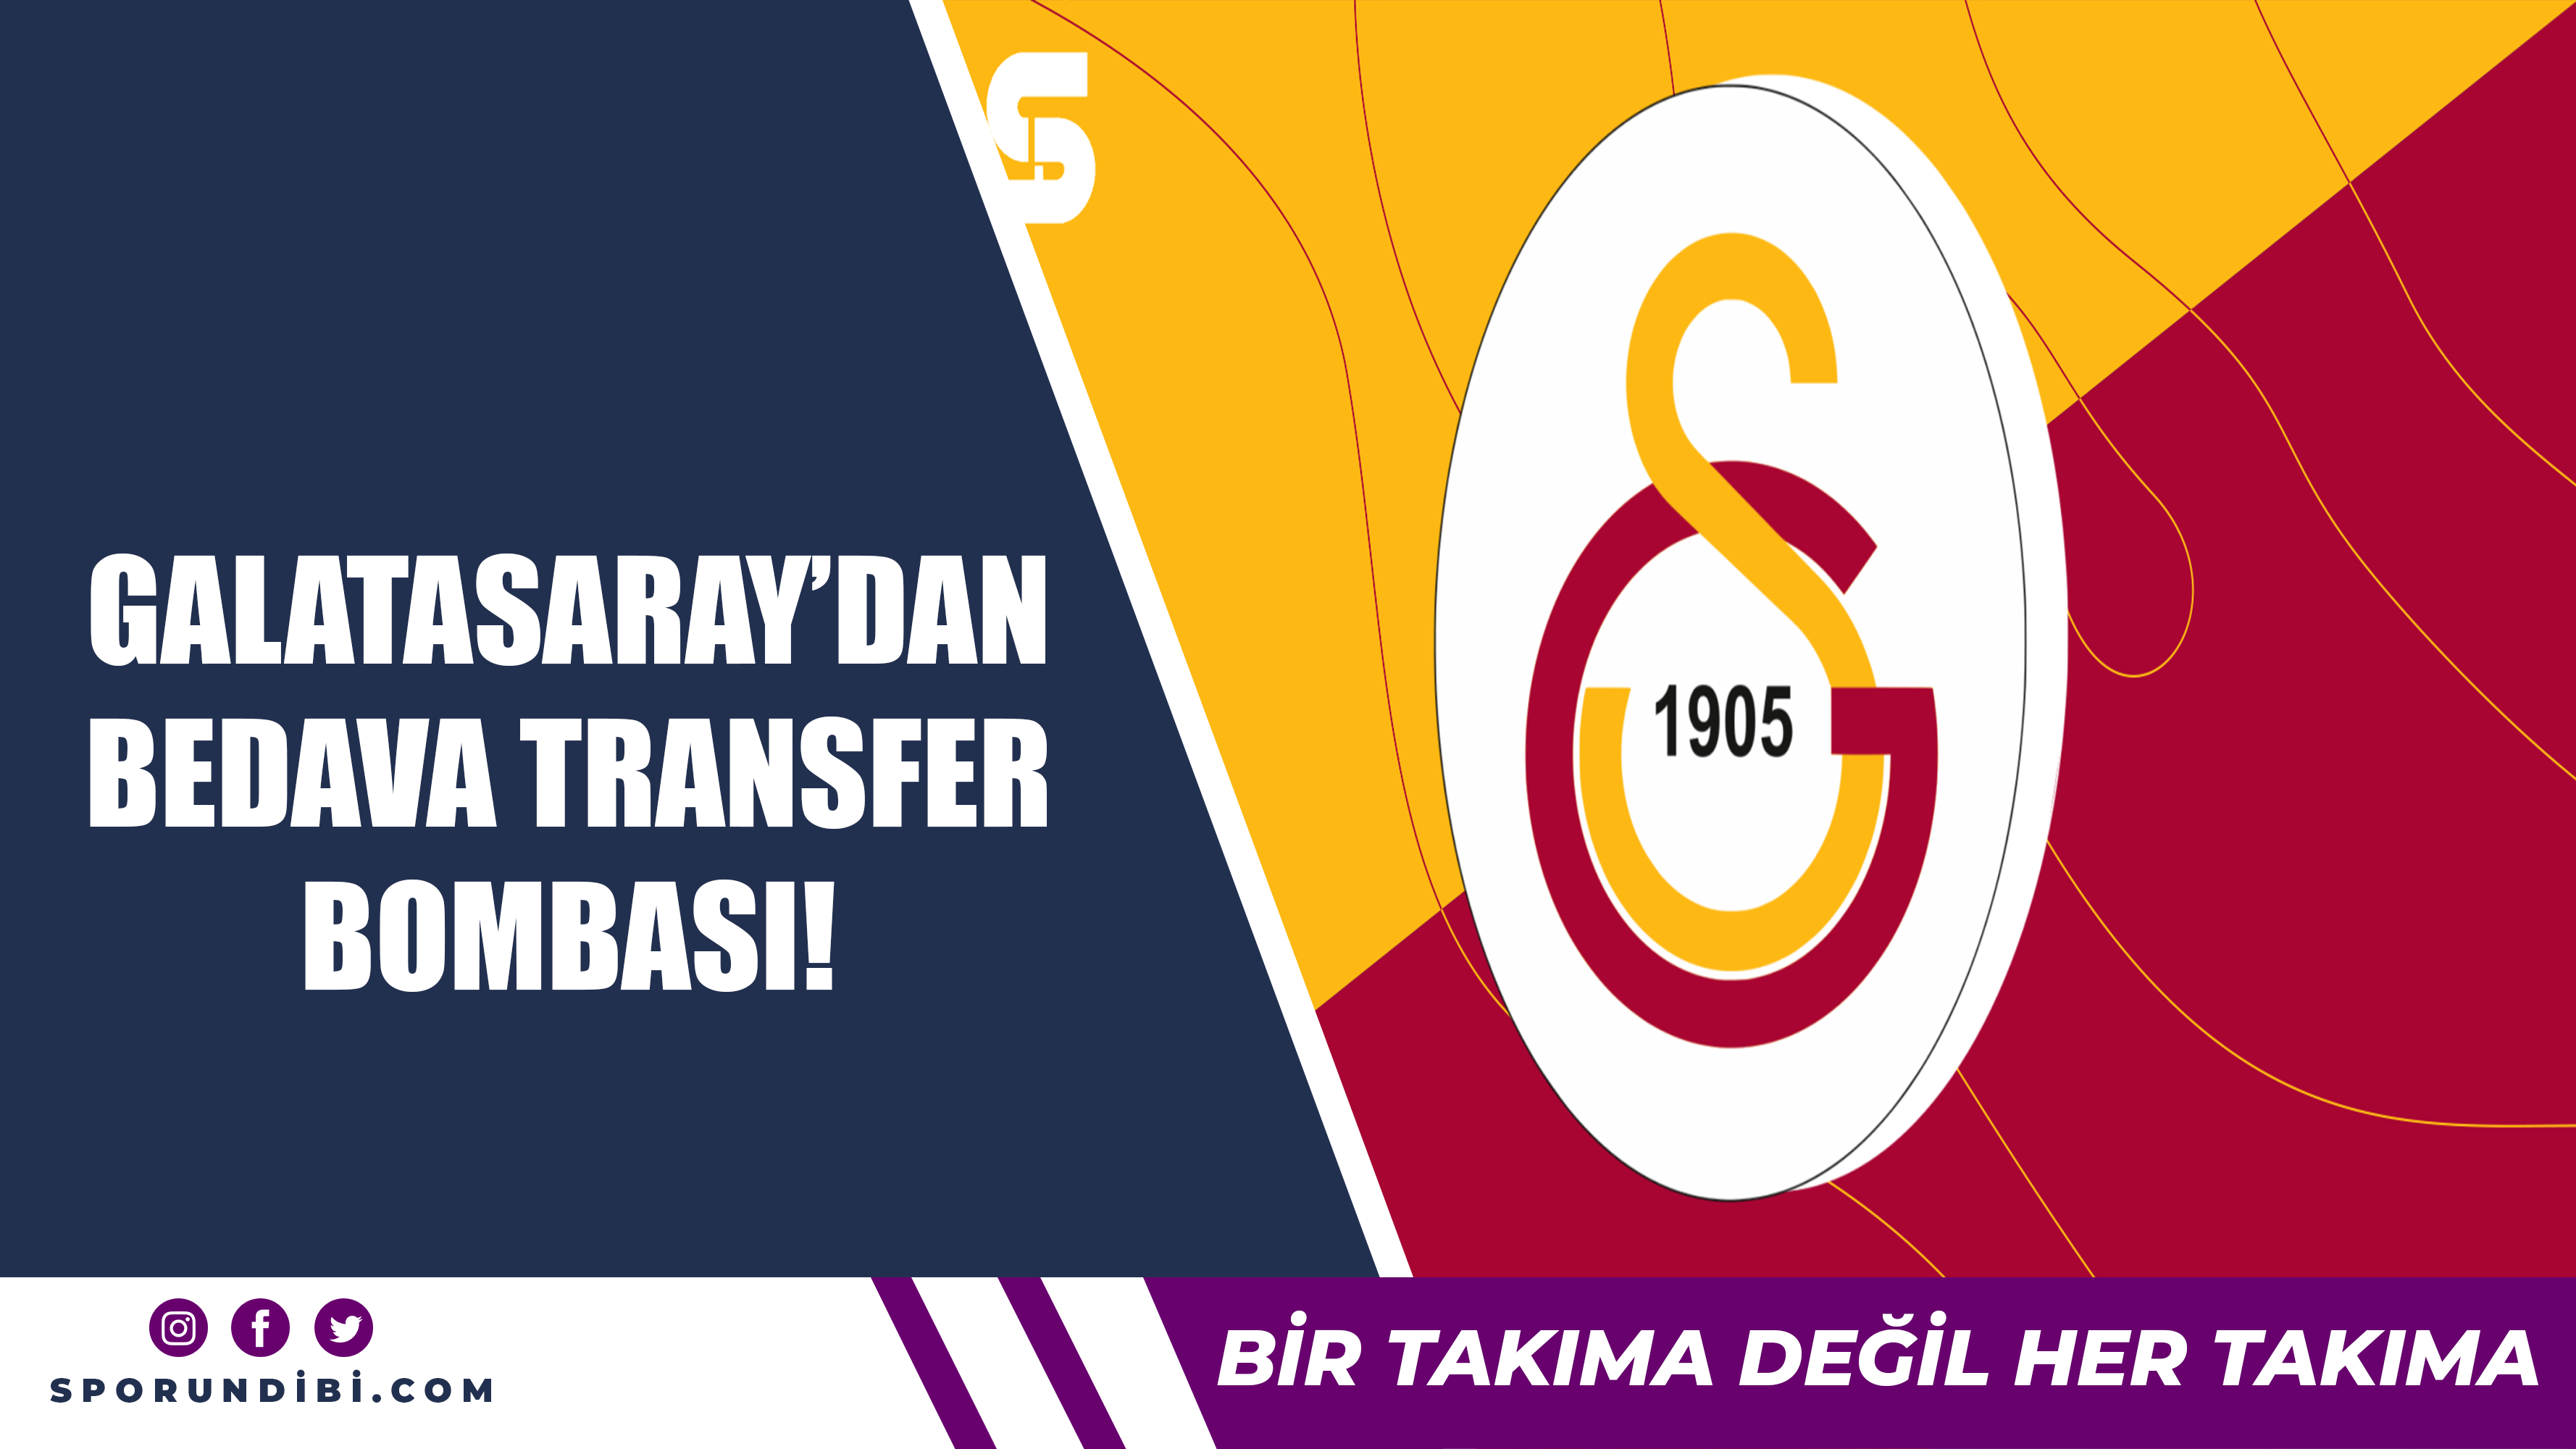 Galatasaray'dan bedava transfer bombası!